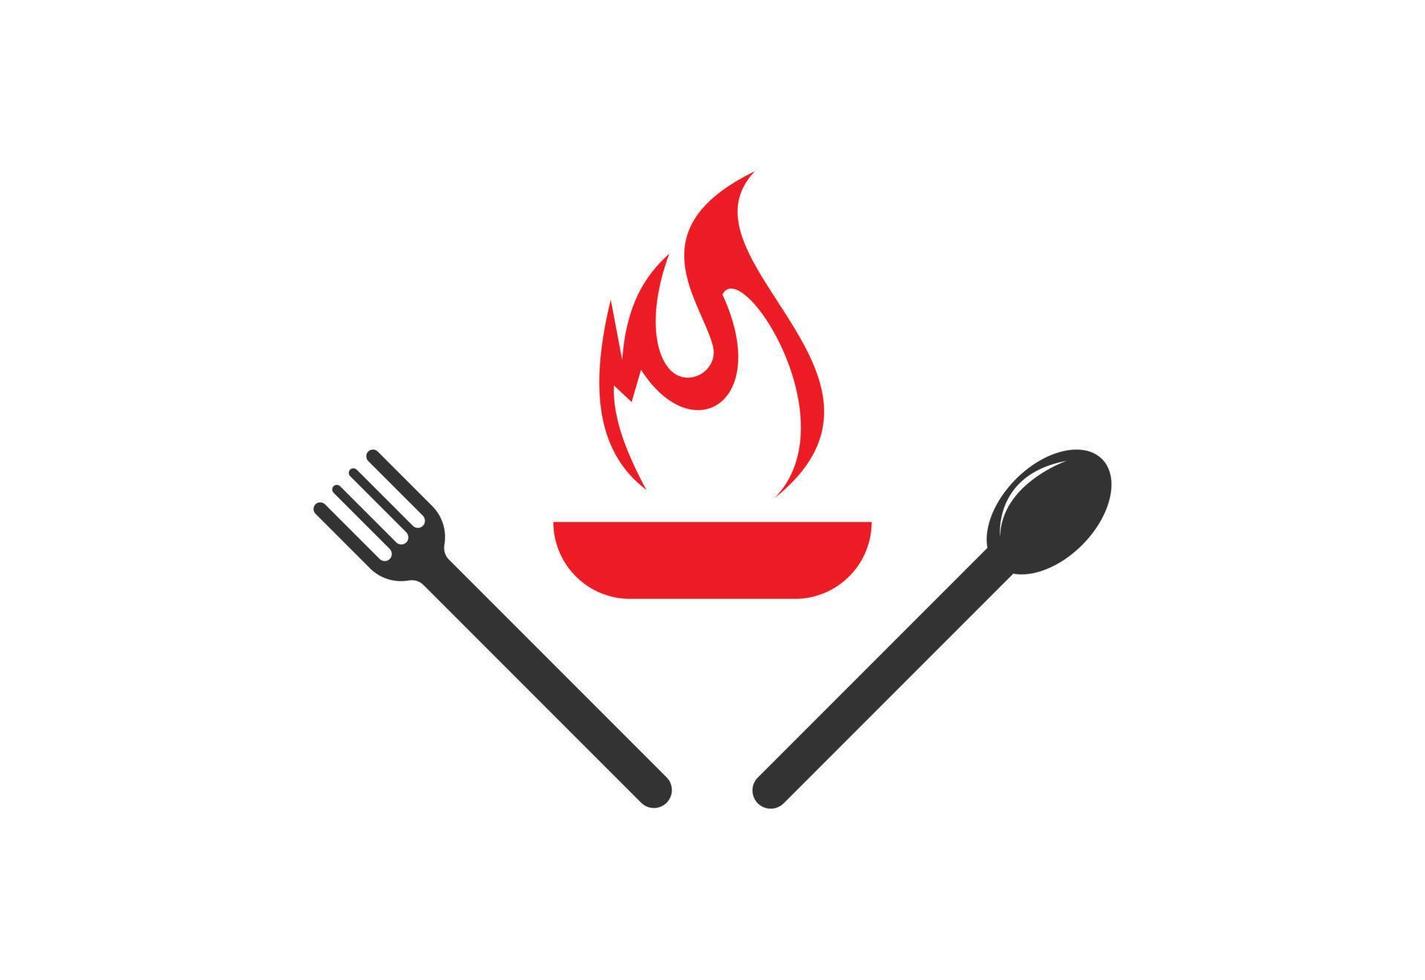 cuisine, cuisine, logo de cuisine. restaurant, menu, café, création de logo d'étiquette de restaurant, illustration vectorielle vecteur